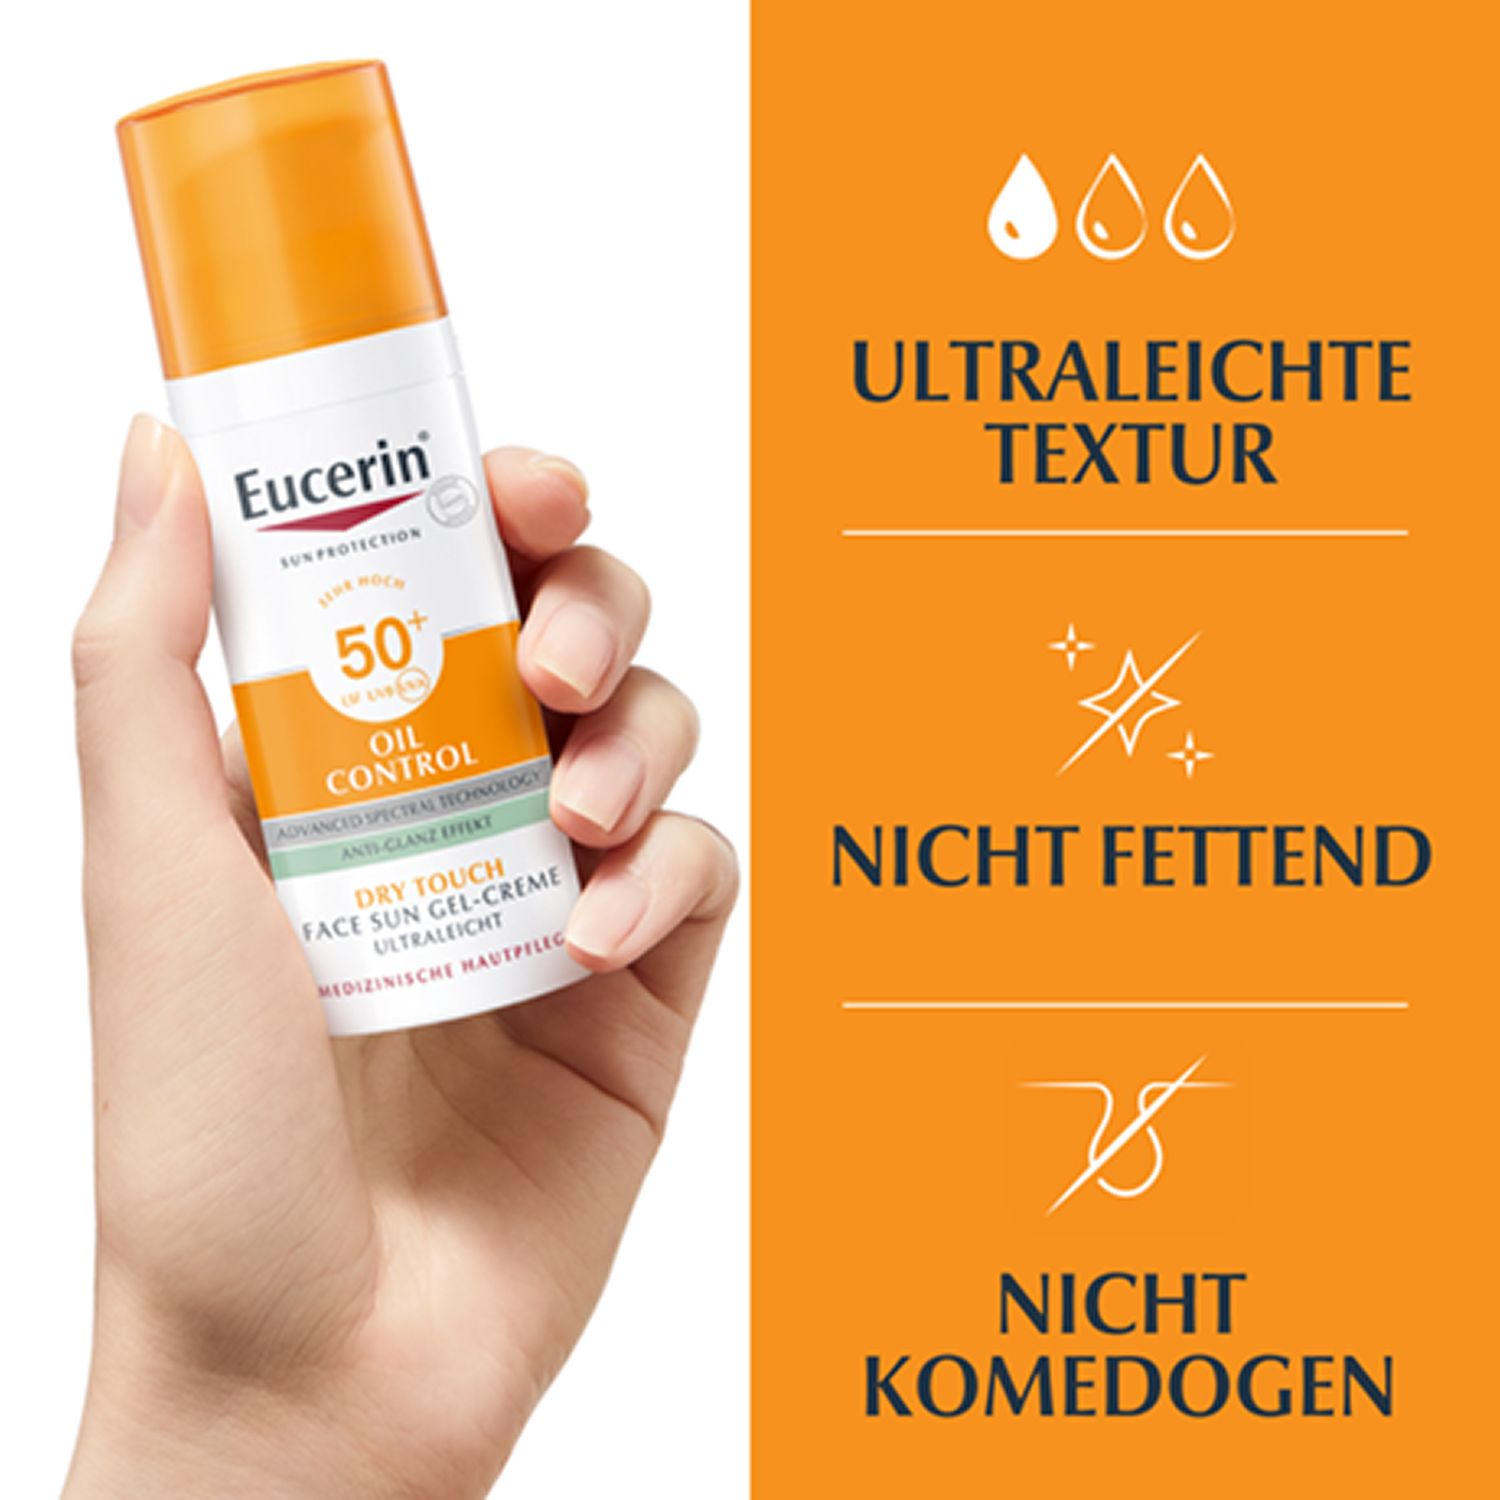 Eucerin® Oil Control Face Sun Gel-Creme LSF 50+ – sehr hoher Sonnenschutz mit 8 Stunden Anti-Glanz Effekt, auch für zu Akne neigende Haut - Jetzt 20% sparen mit Code "sommer20"